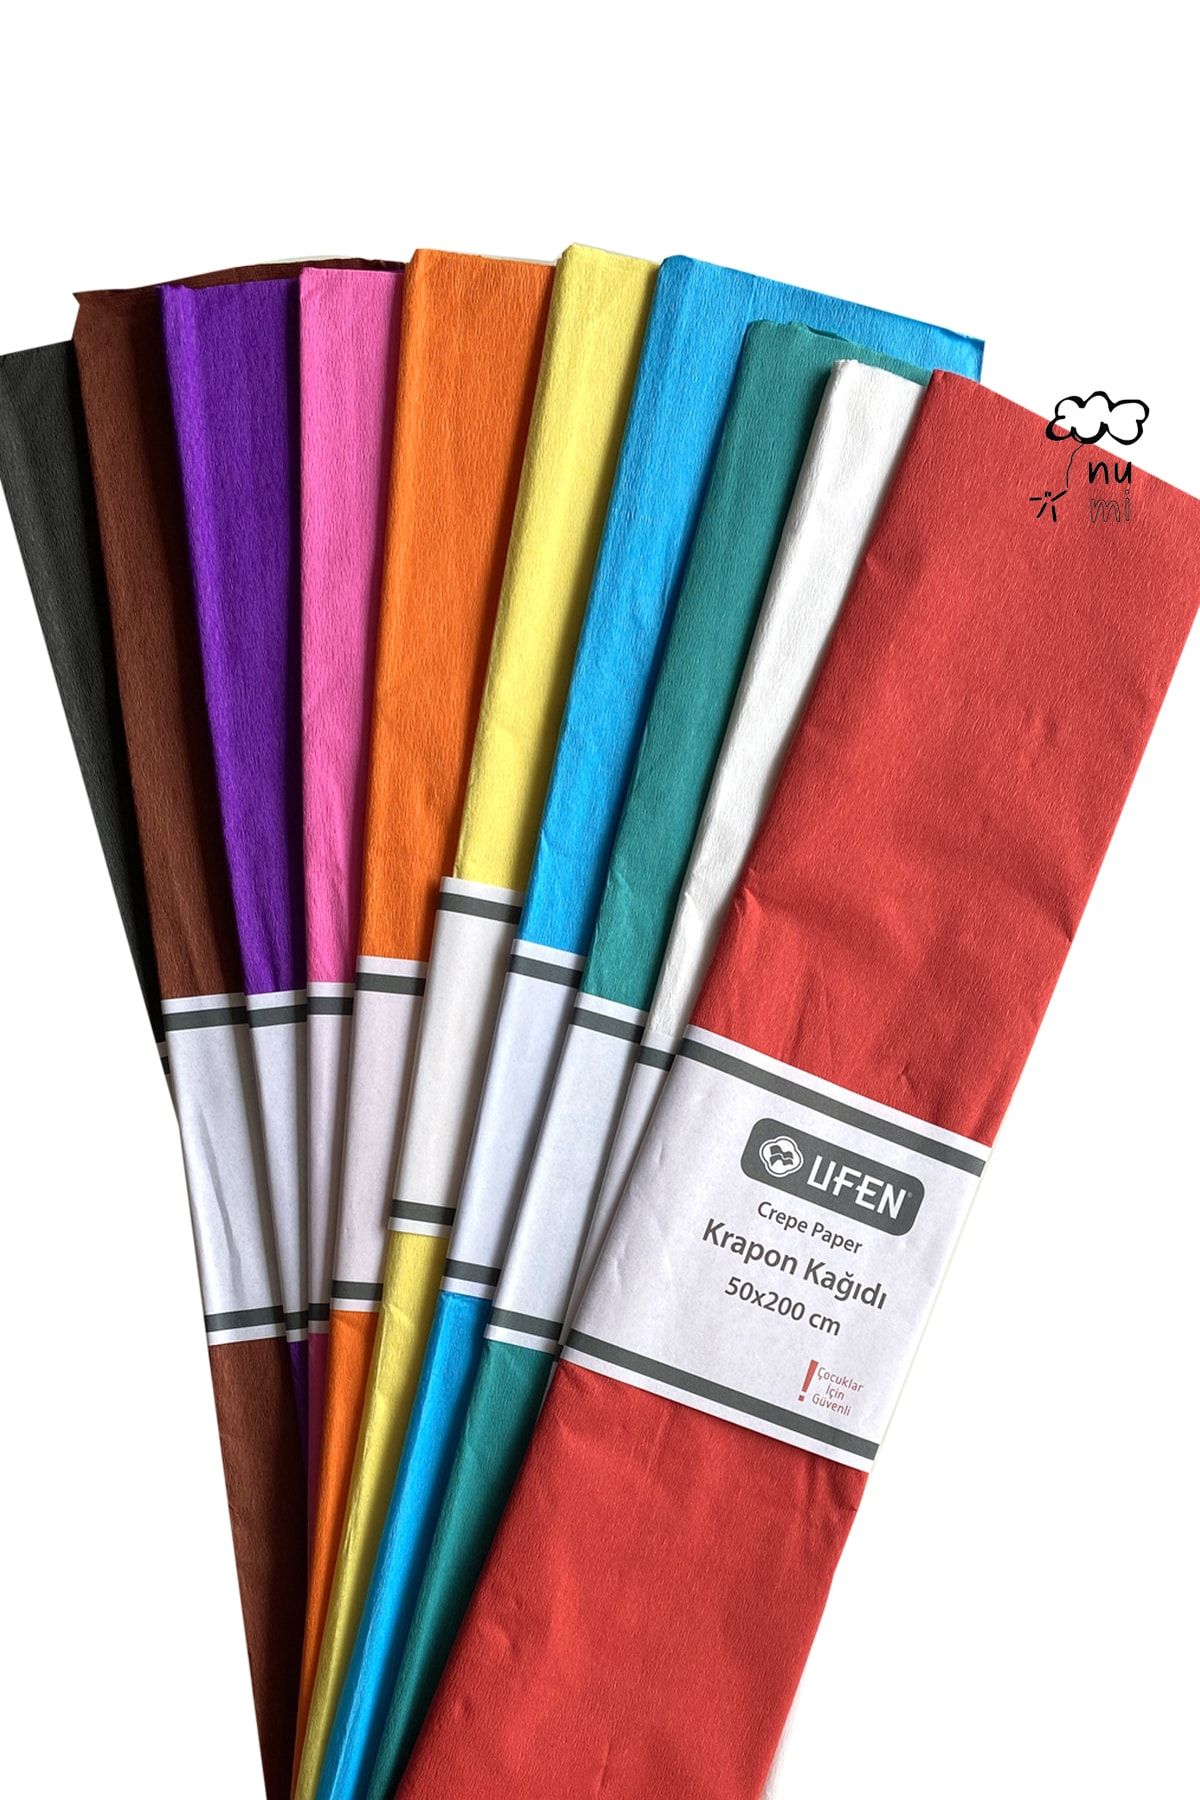 UFEN 10 Renk Krapon Kağıdı 50x200 Cm